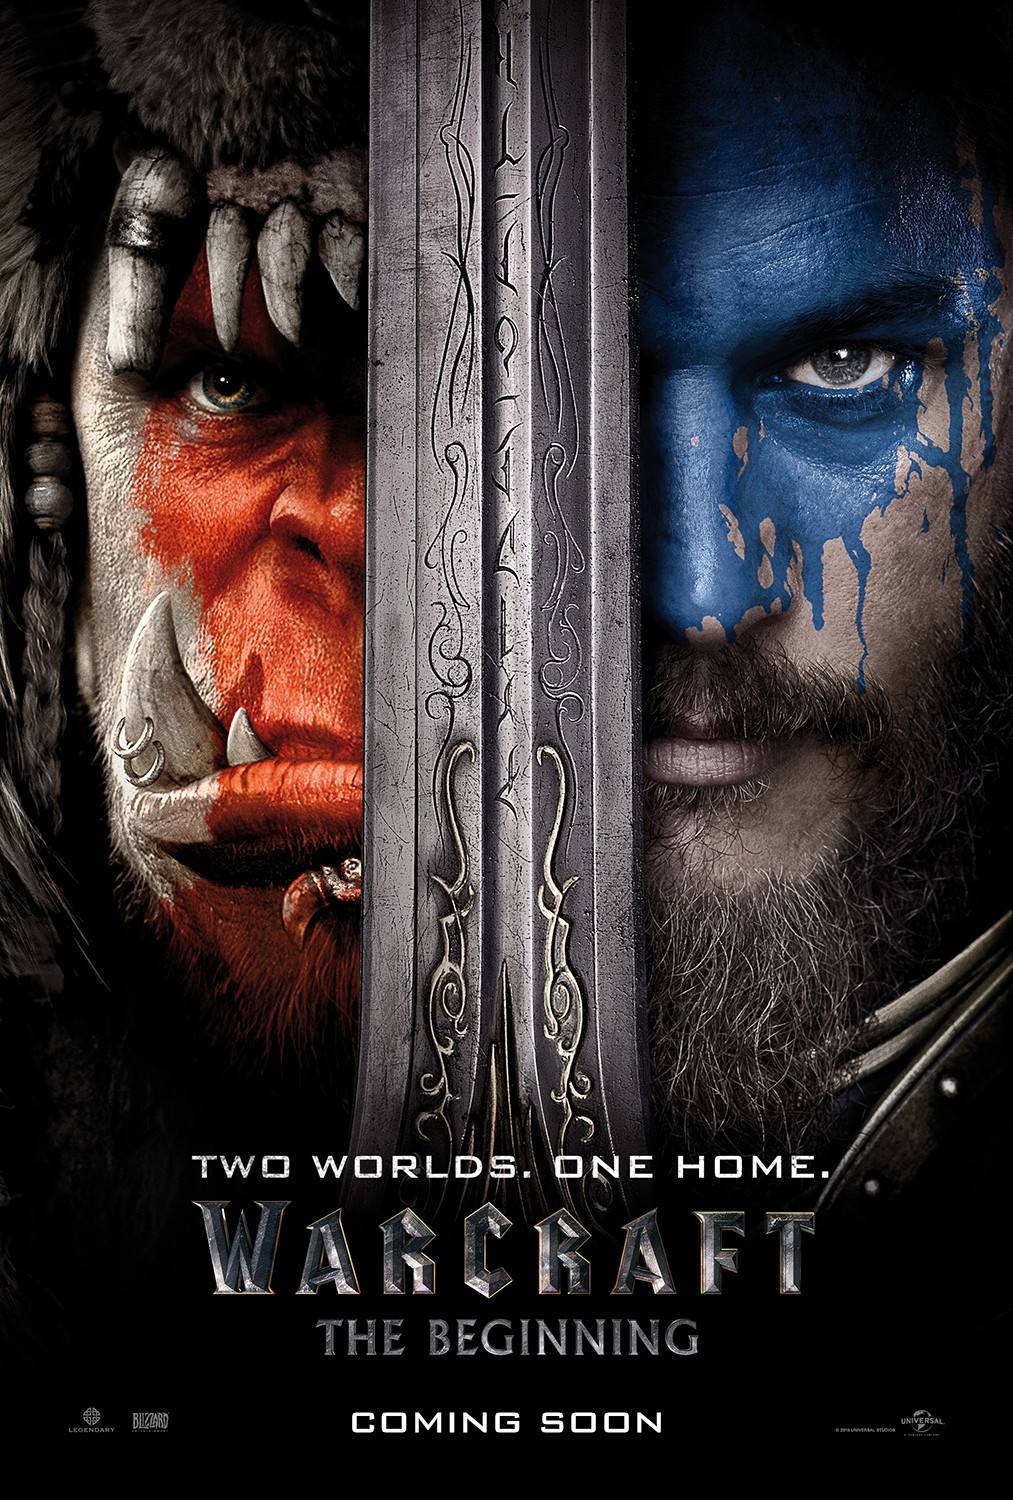 Смотреть онлайн официальный трейлер к фильму Warcraft (Варкрафт)